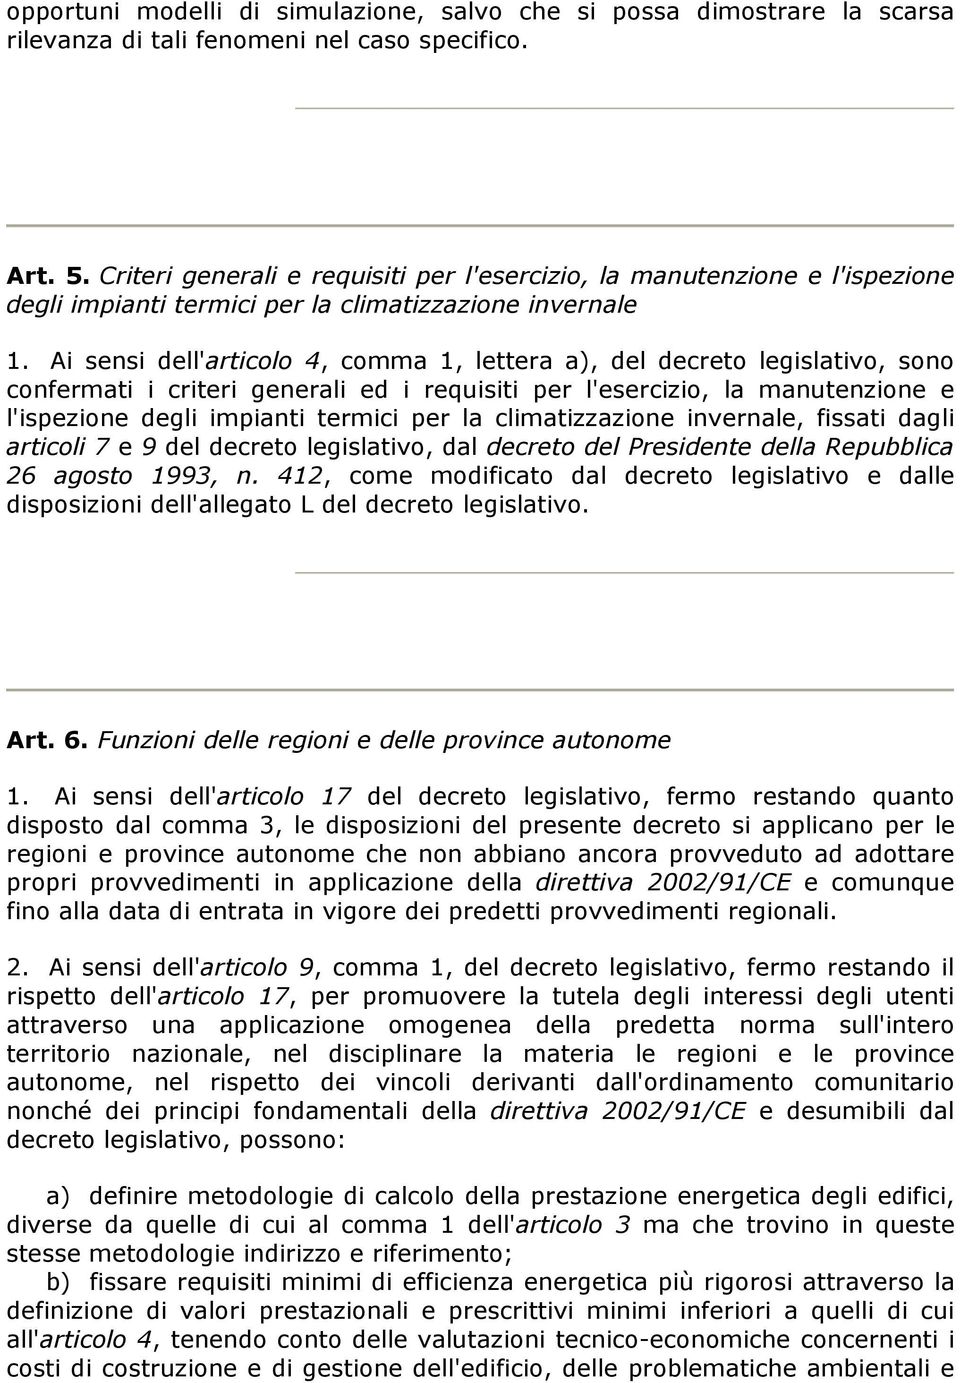 Ai sensi dell'articolo 4, comma 1, lettera a), del decreto legislativo, sono confermati i criteri generali ed i requisiti per l'esercizio, la manutenzione e l'ispezione degli impianti termici per la